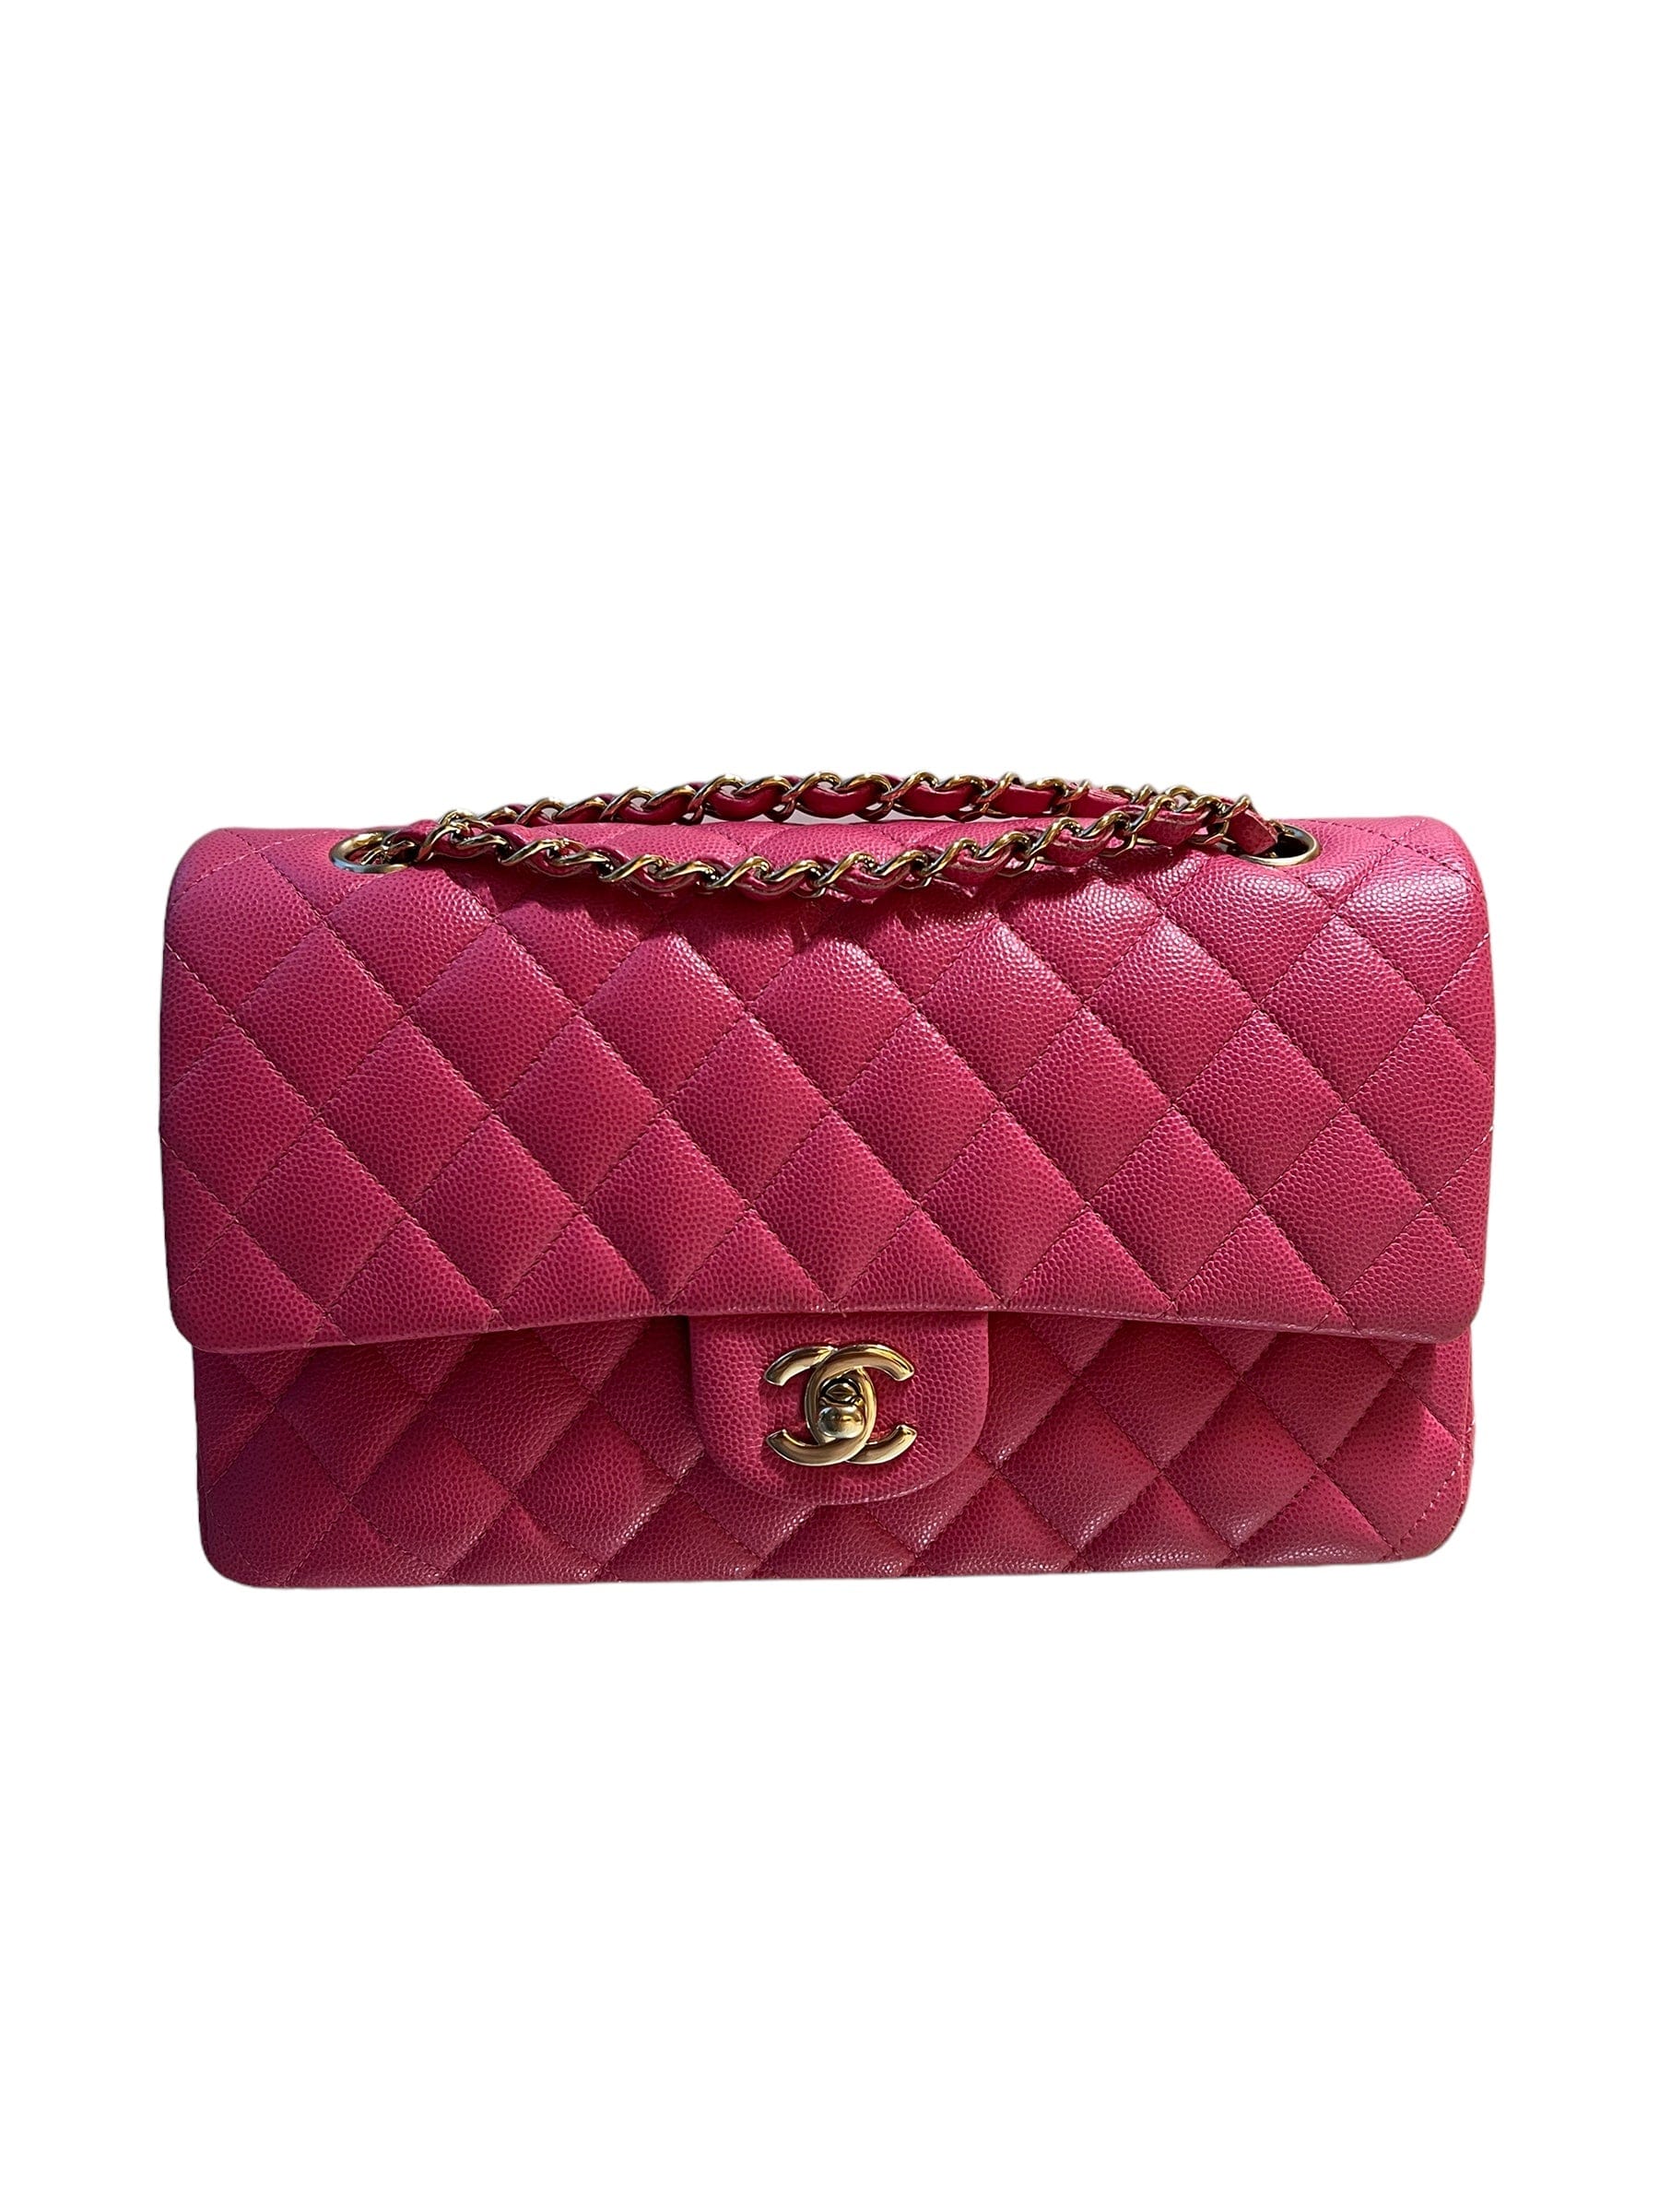 Chanel Chanel Classic Medium Flap Pink Caviar GHW SKCY059